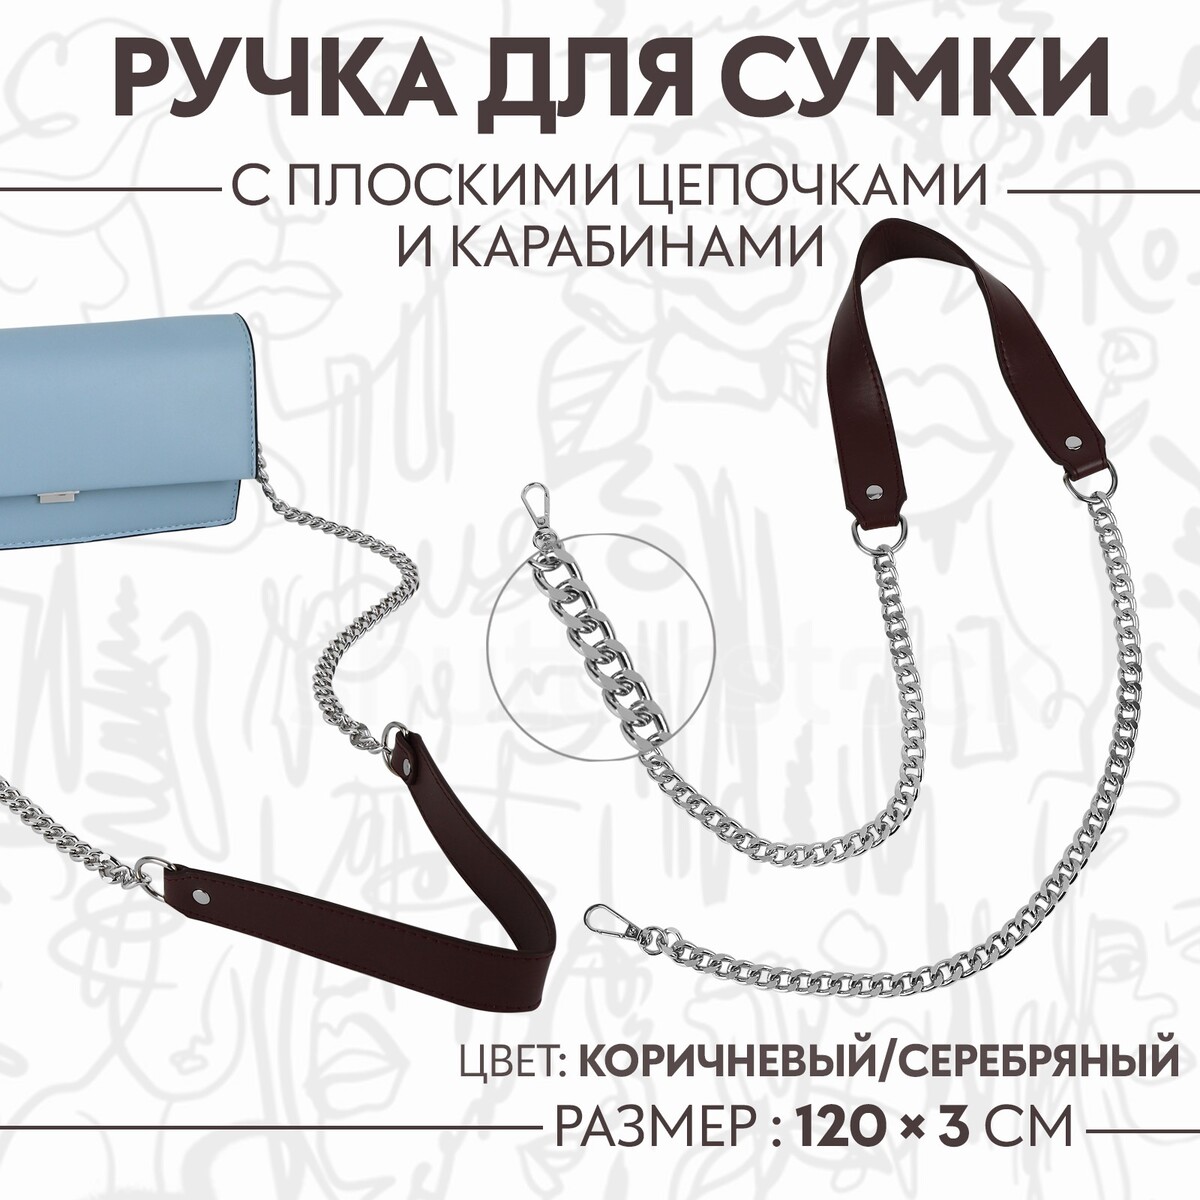 Ручка для сумки, с плоскими цепочками и карабинами, 120 × 3 см, цвет коричневый/серебряный ручка для сумки с плоскими цепочками и карабинами 120 × 3 см бежевый серебряный